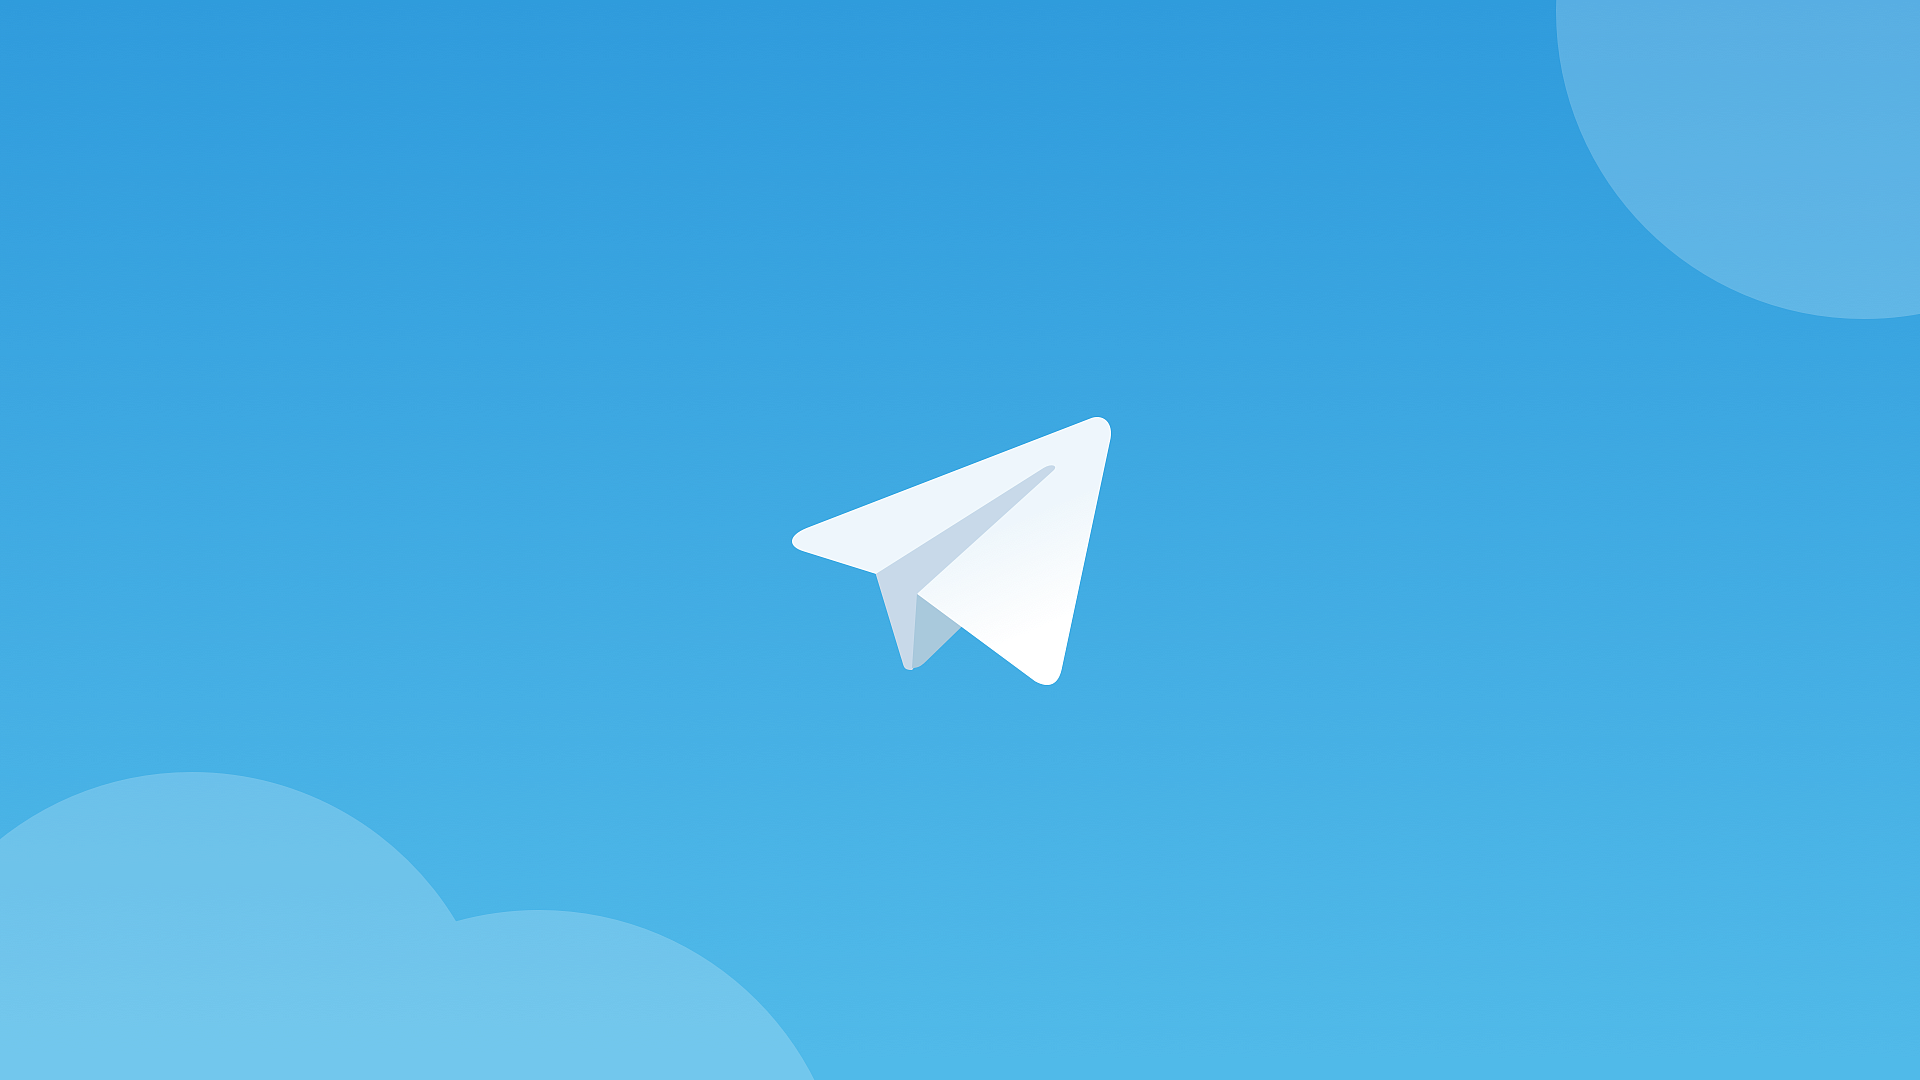 Telegram получил в январе важных 10 нововведений